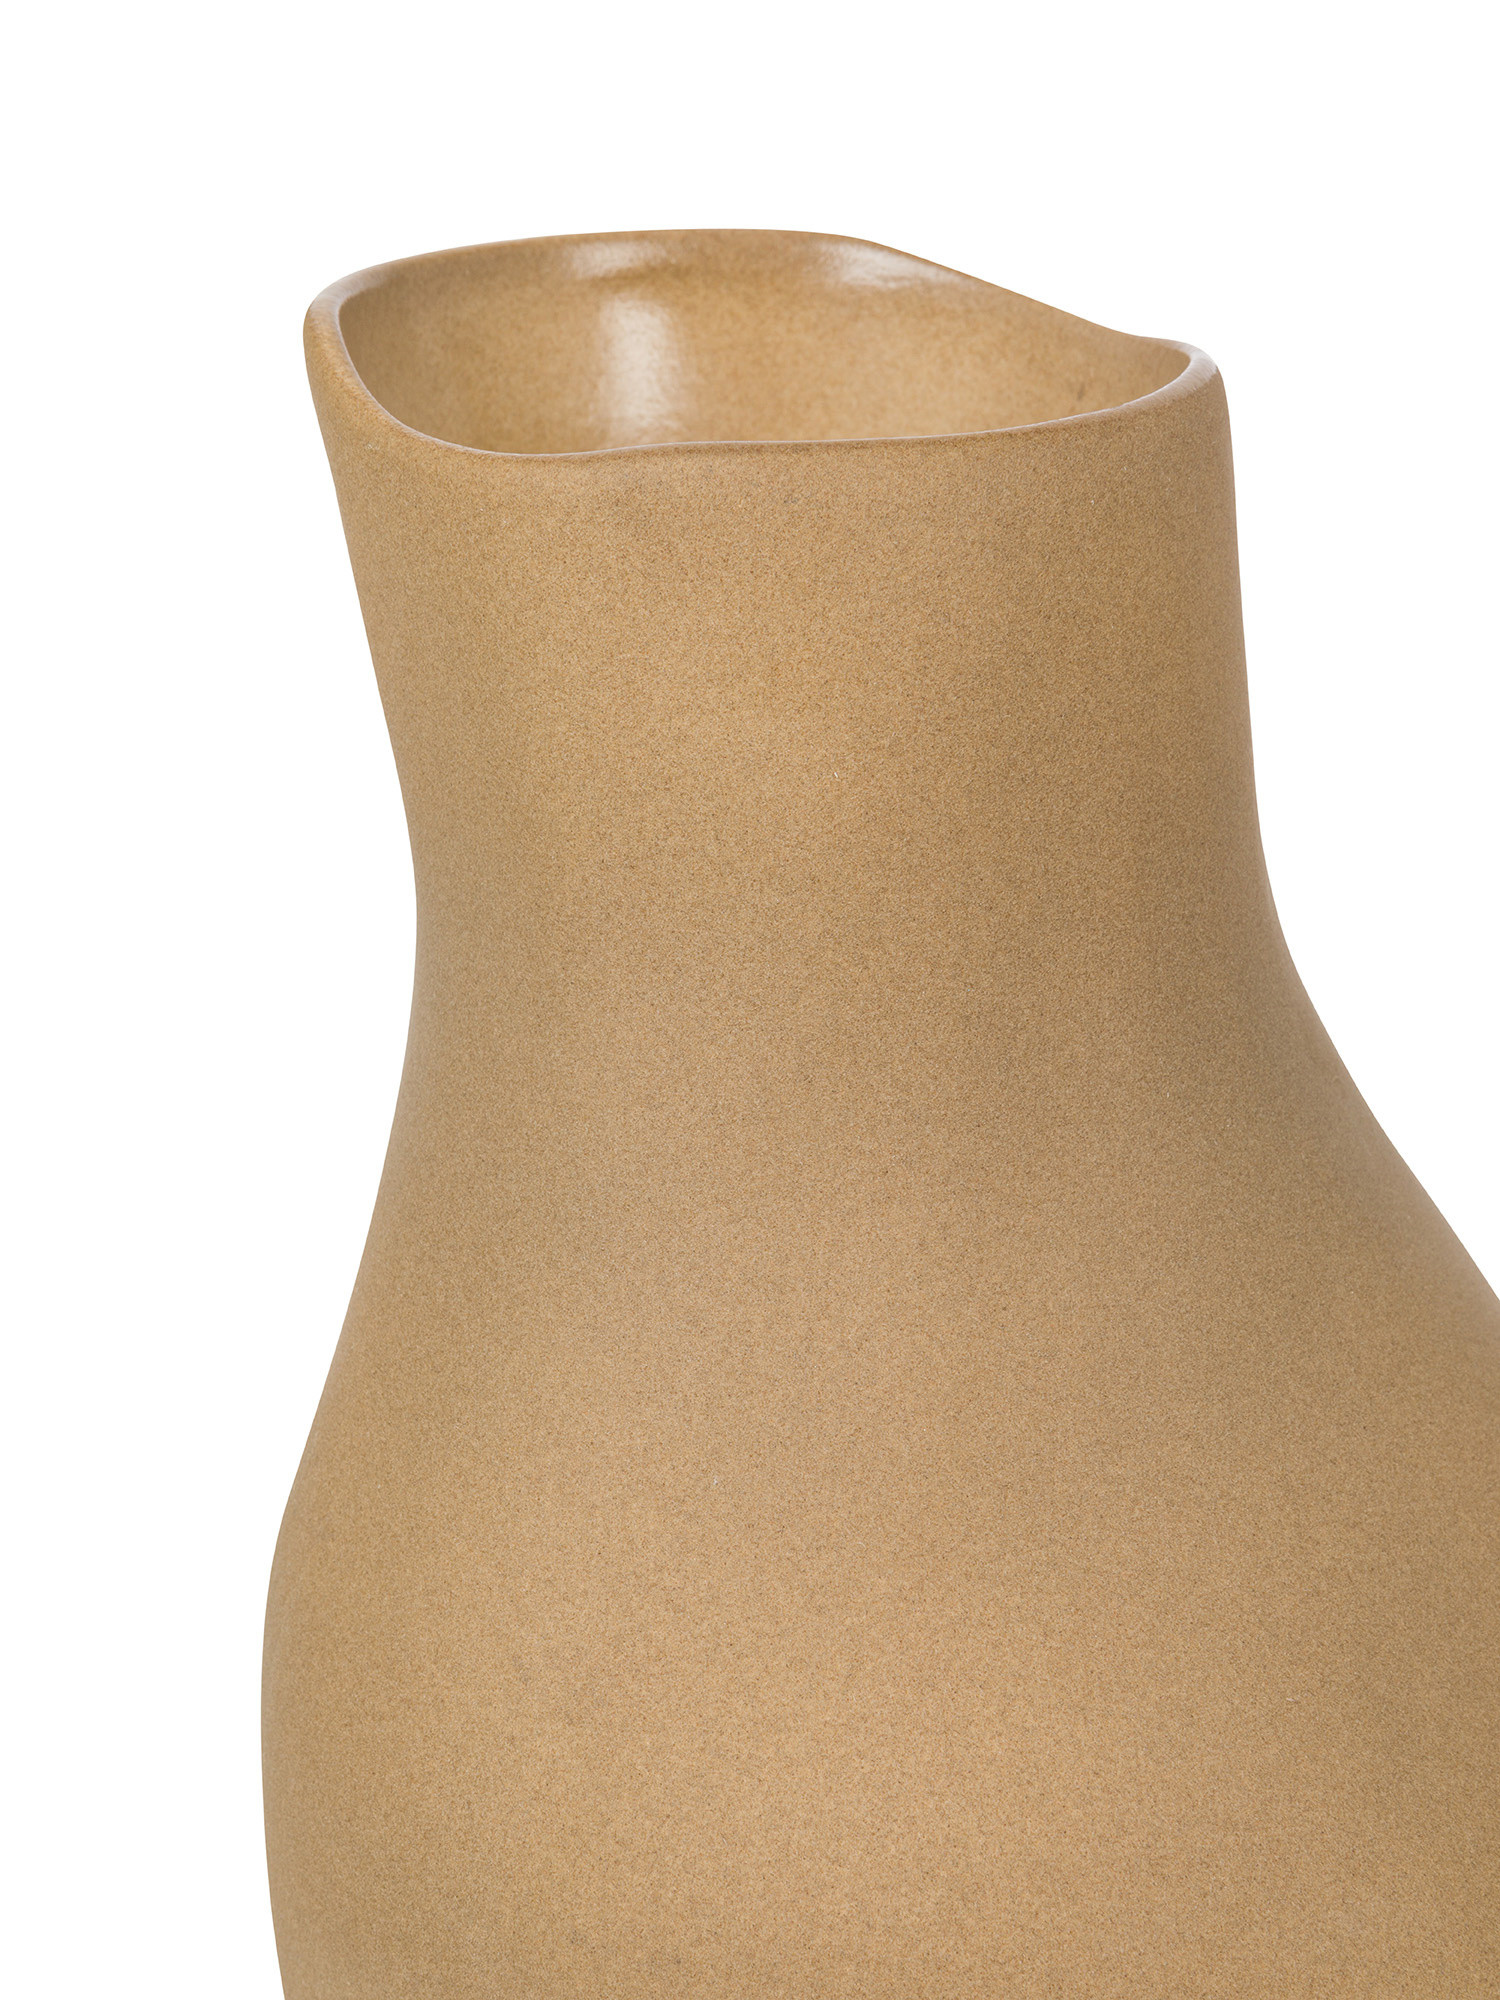 Vaso in ceramica, Beige, large image number 1